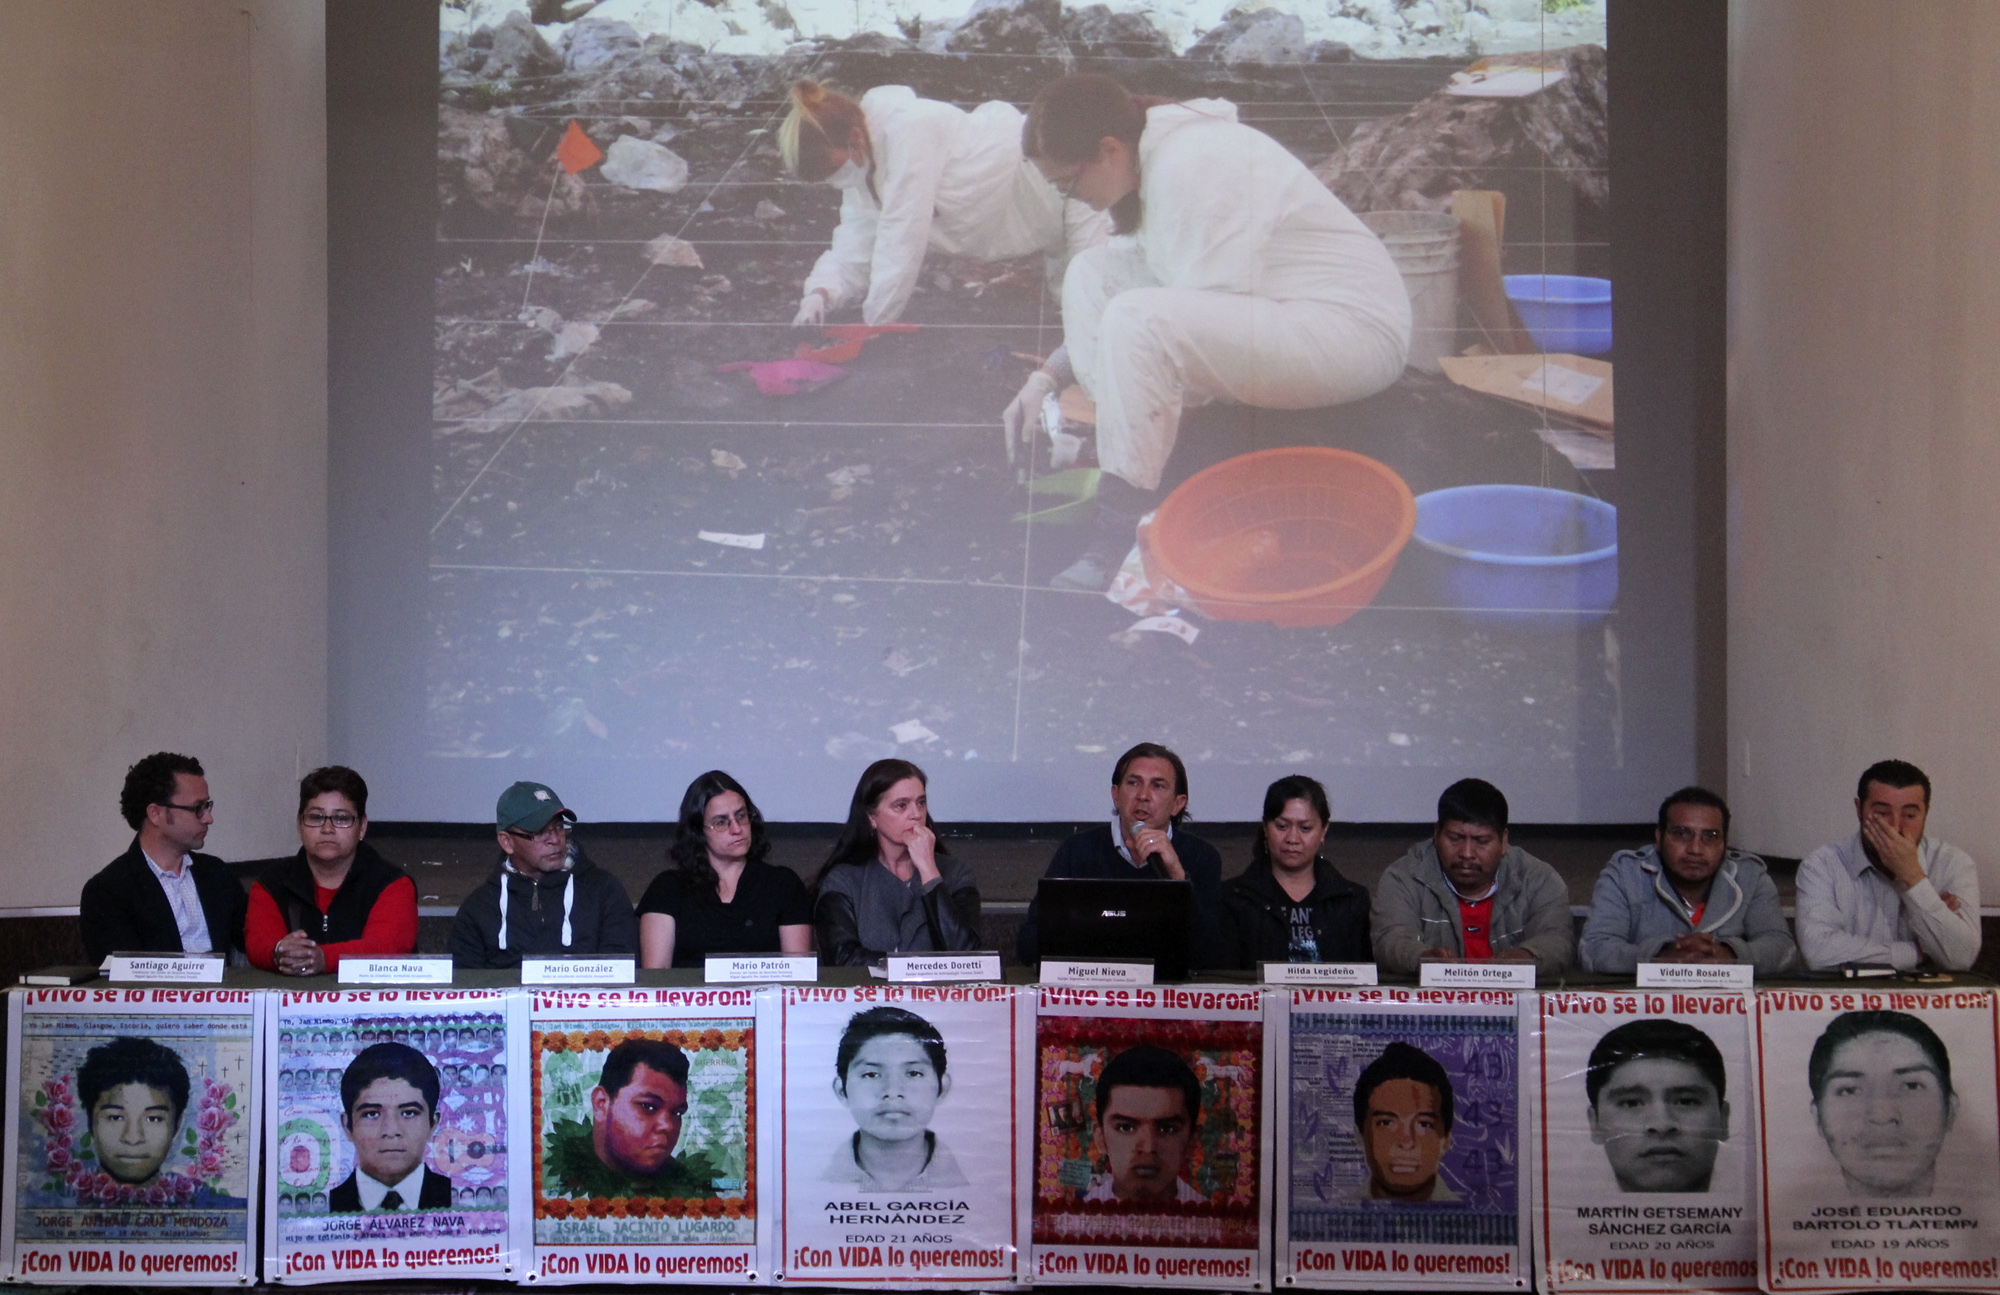  Gobierno mexicano descarta confrontación con expertos del caso Iguala